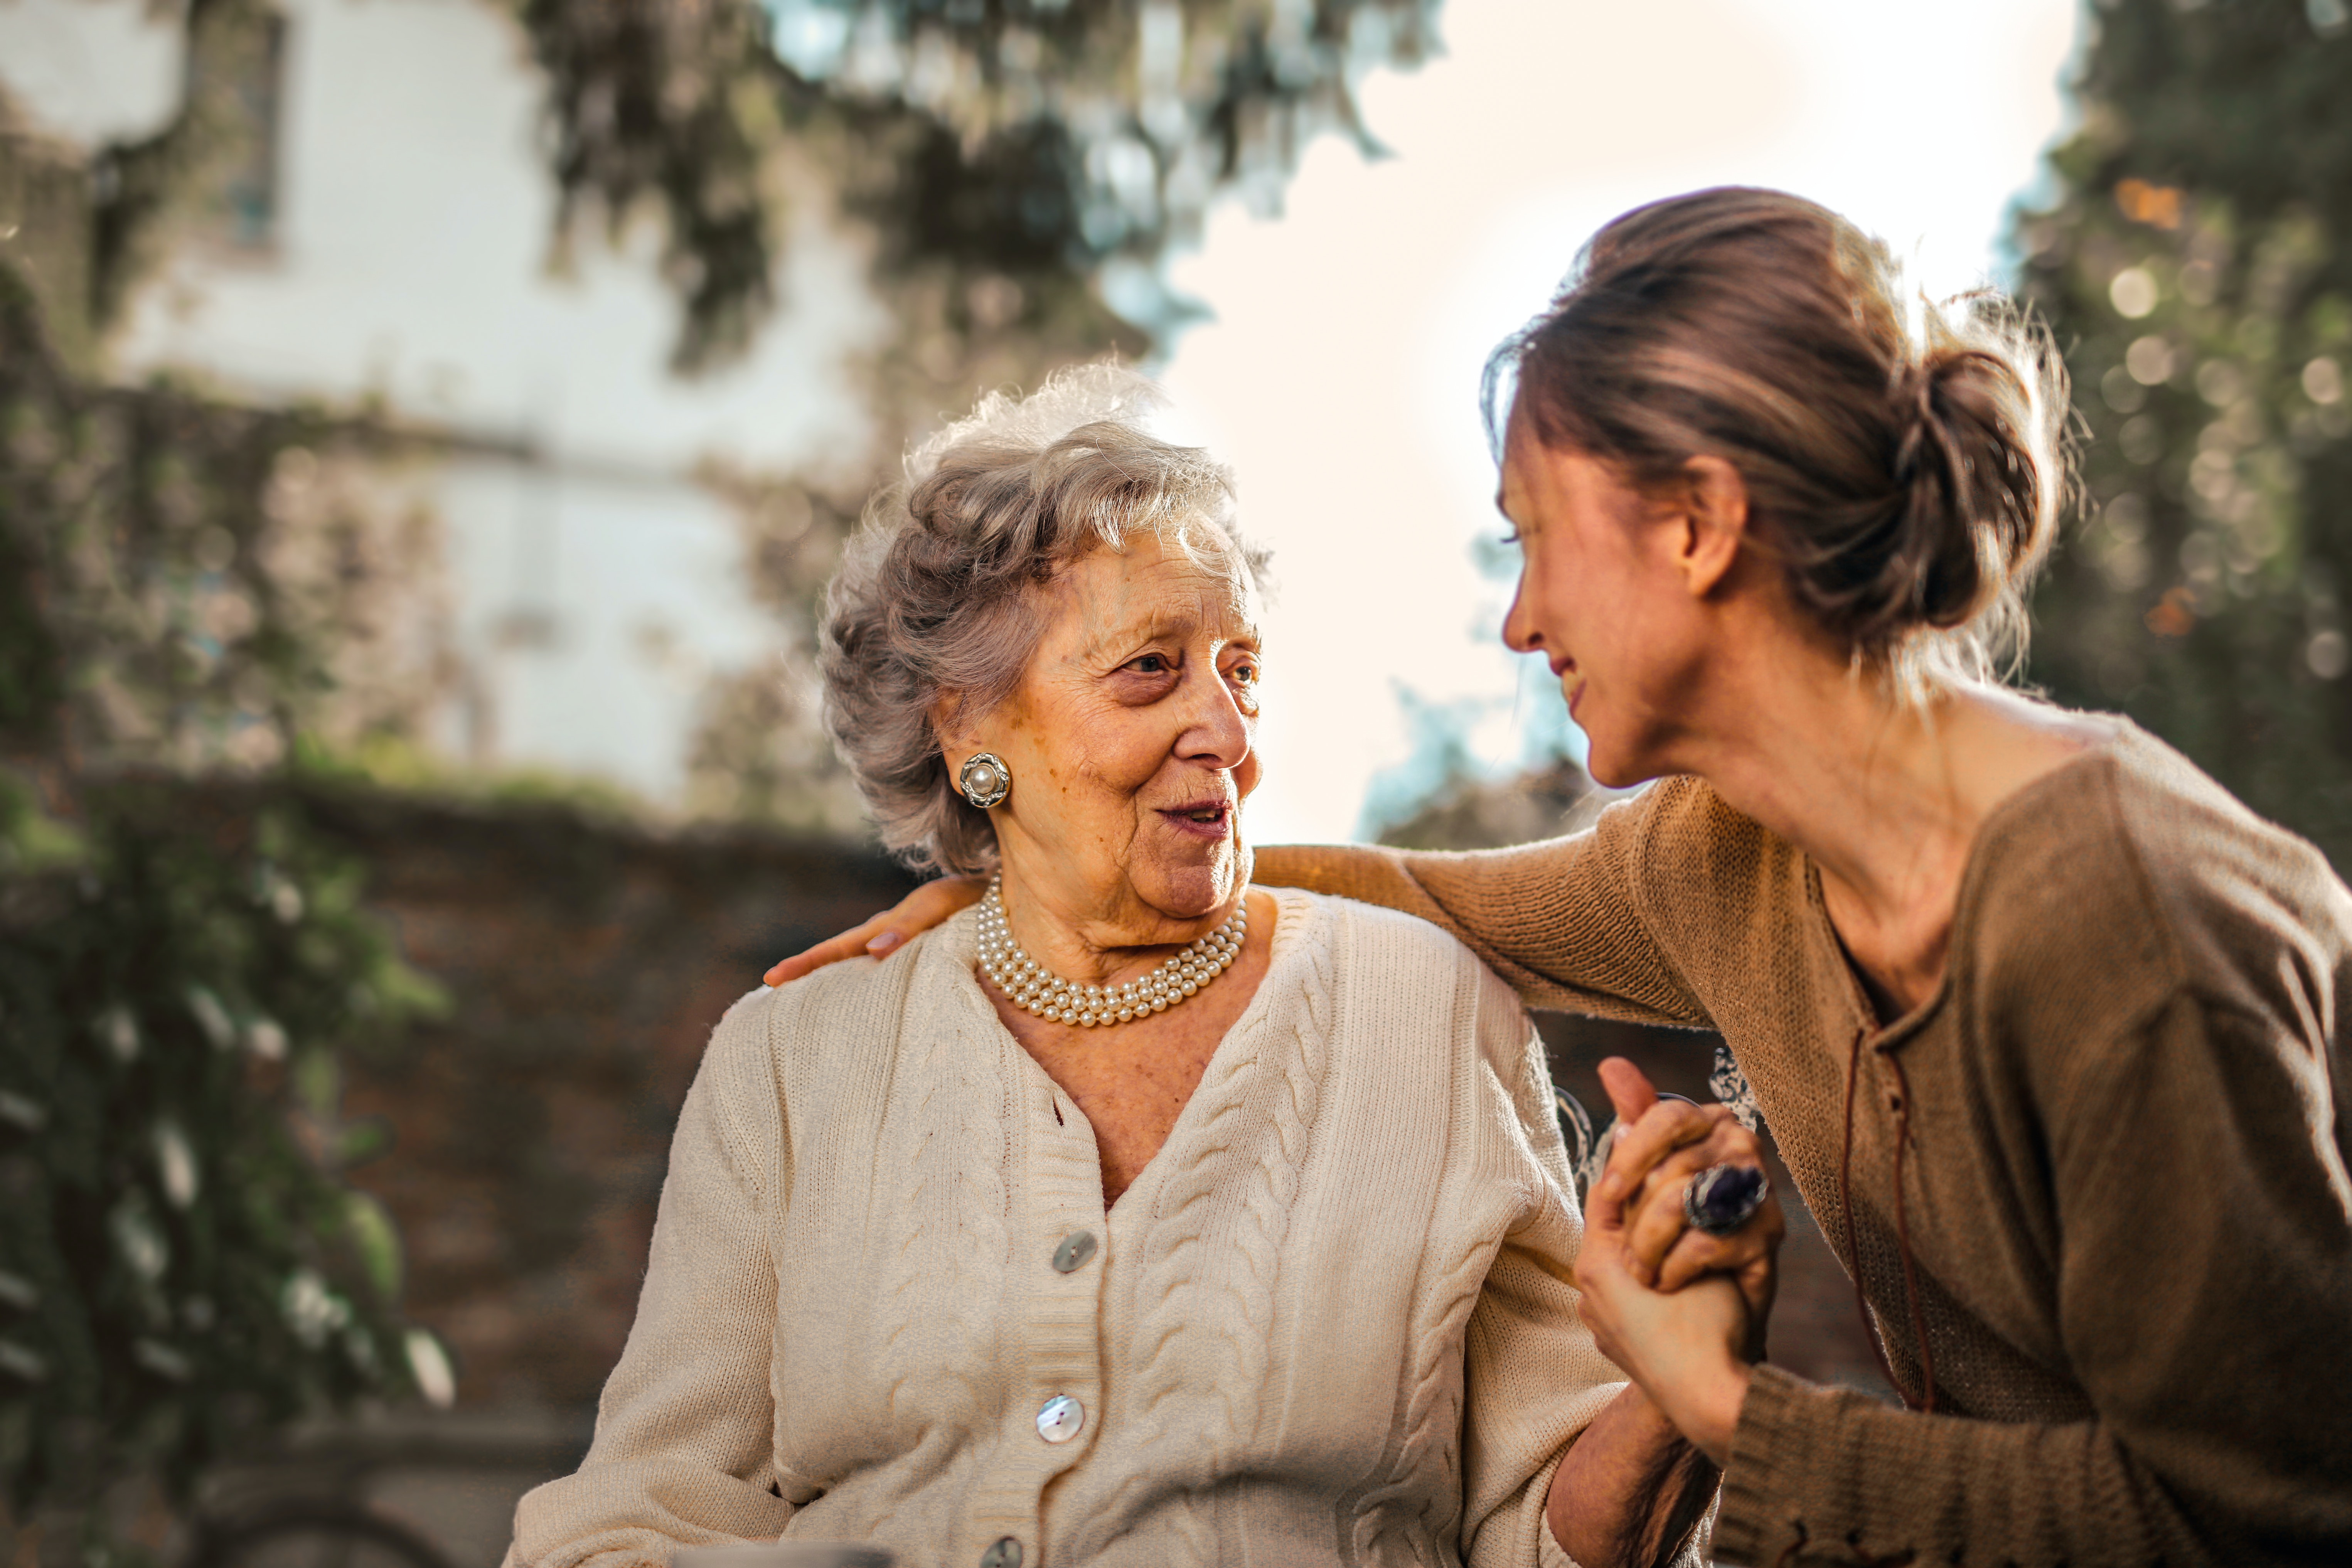 Zajistěte svým seniorů potřebnou péči v jejich domácím prostředí